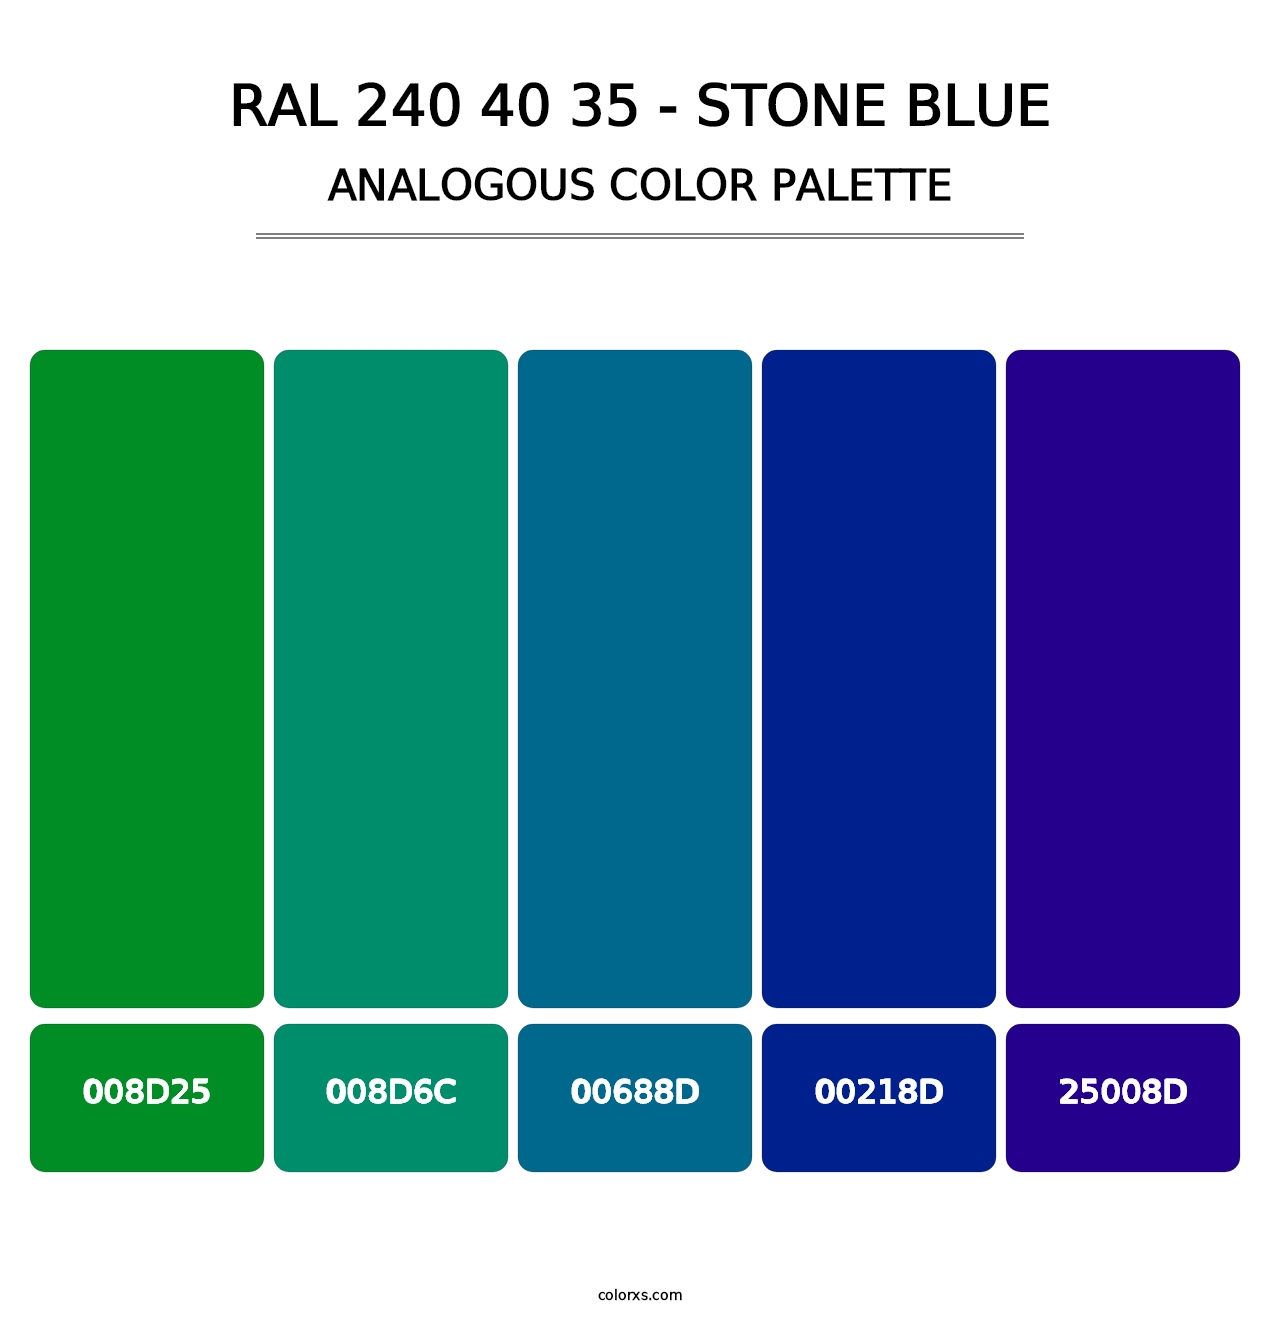 RAL 240 40 35 - Stone Blue - Analogous Color Palette